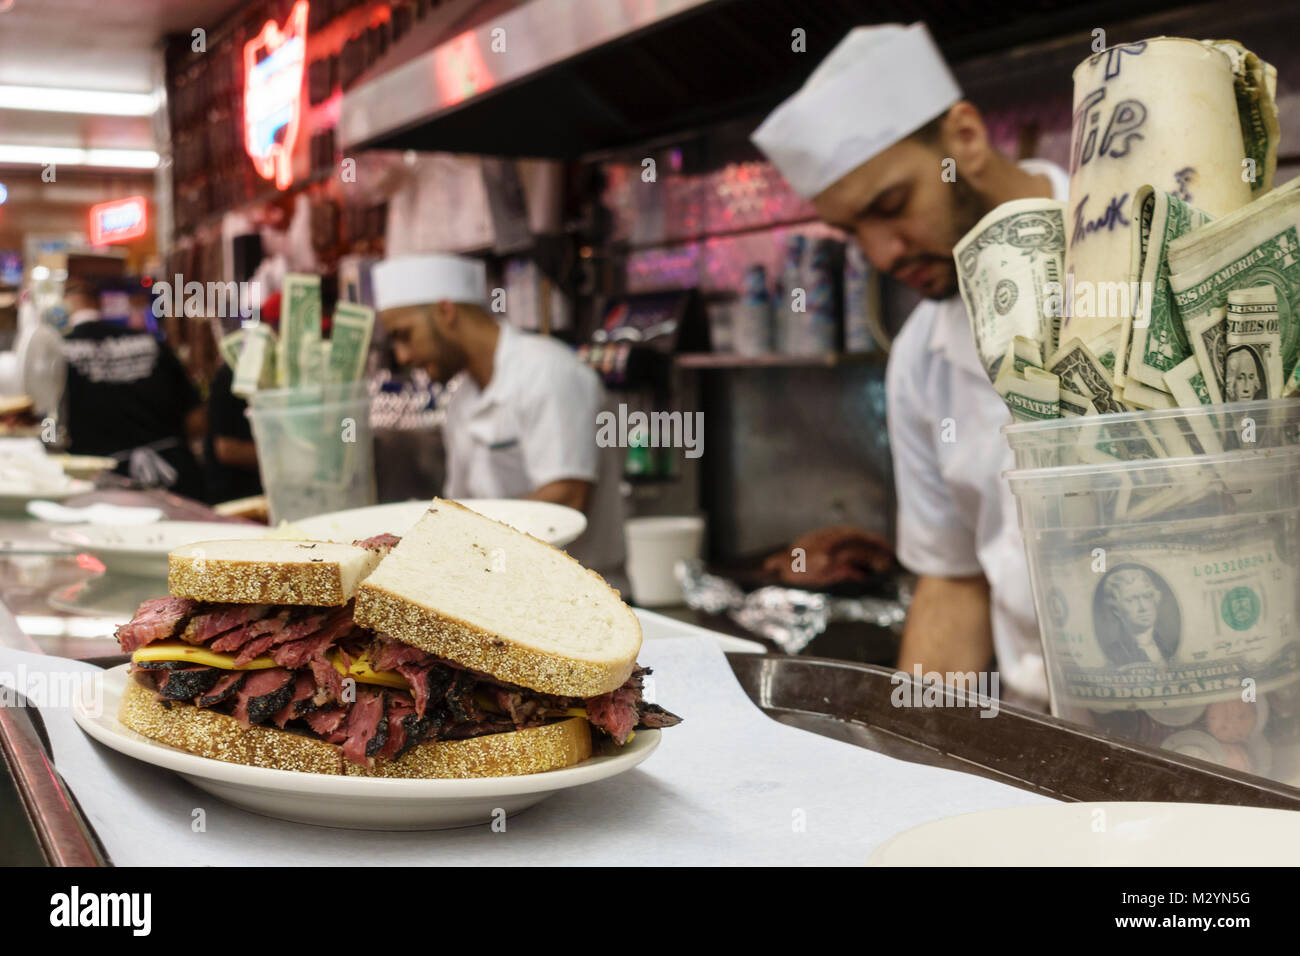 Personnel du travail considérable de décisions pastrami sandwiches dans la cuisine ouverte au Katz's Delicatessen, un célèbre restaurant de la ville de New York. Conseils de l'cup sur le comptoir. Banque D'Images